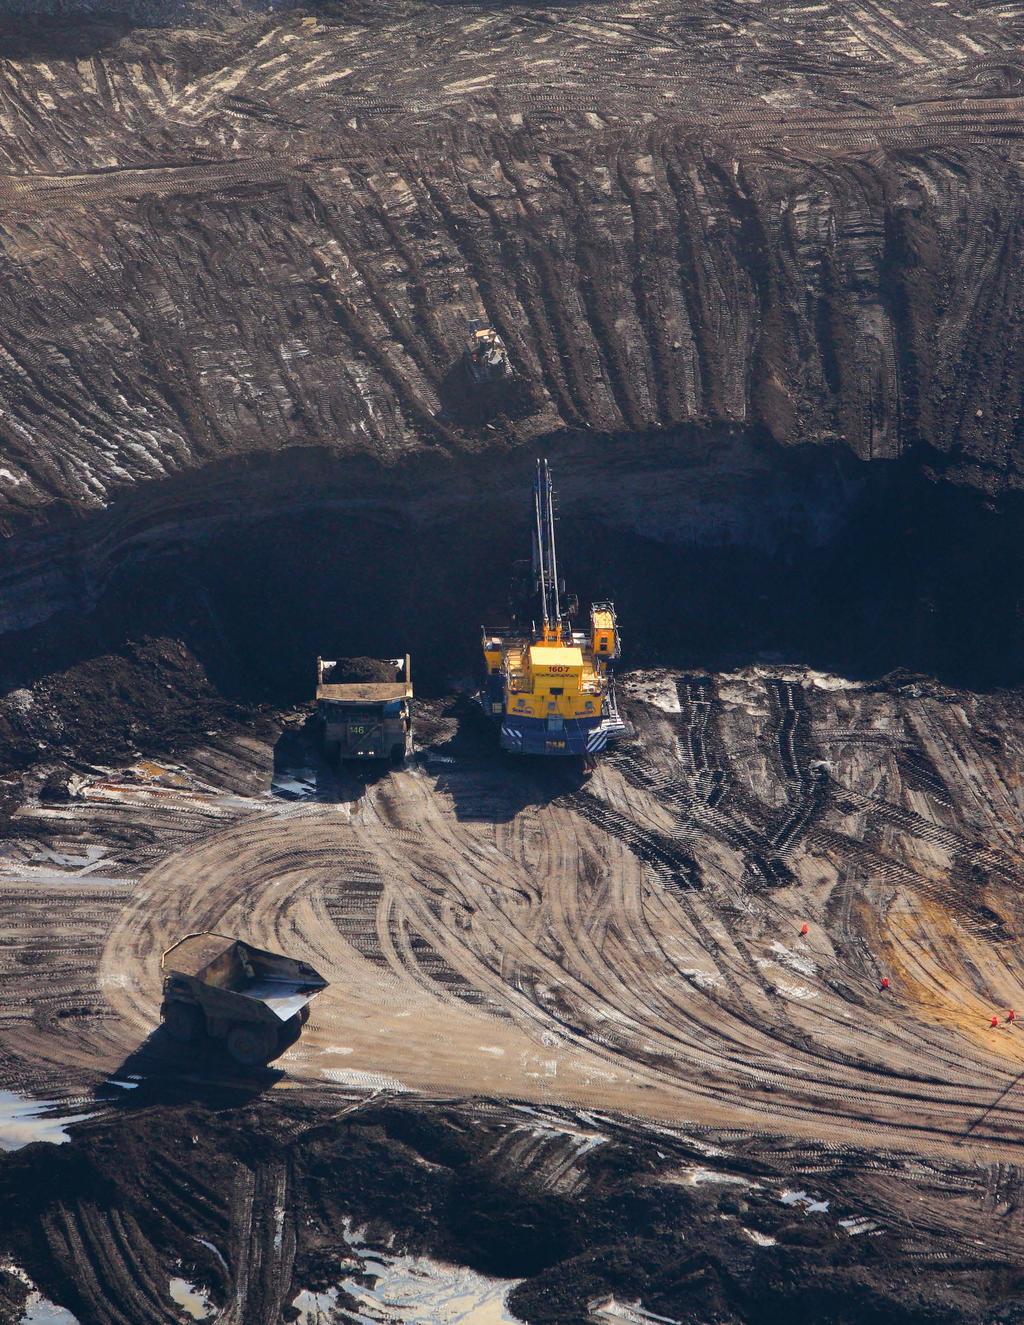 23 Mining bitumen at the Suncor Millennium